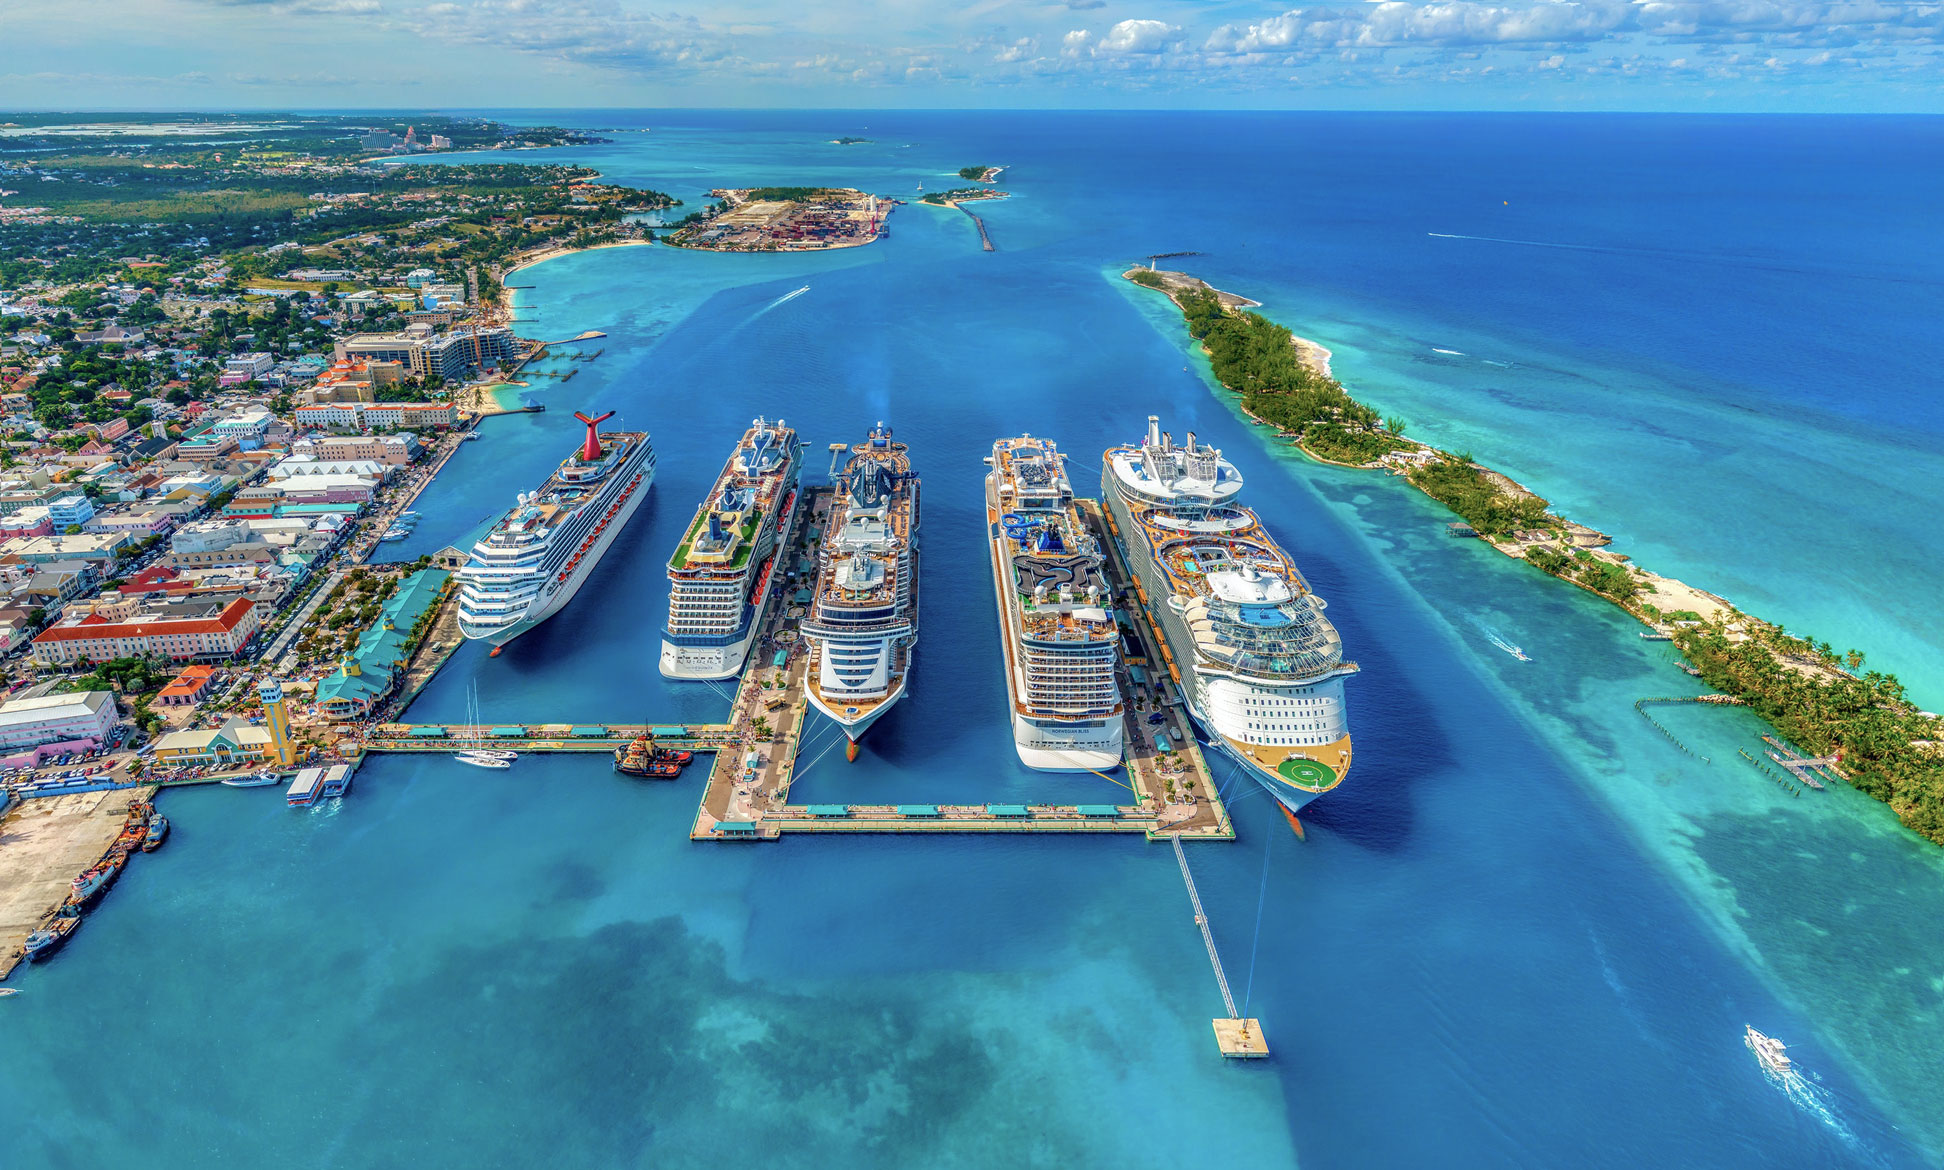 Cruise ships in Nassau in the Bahamas, Caribbean